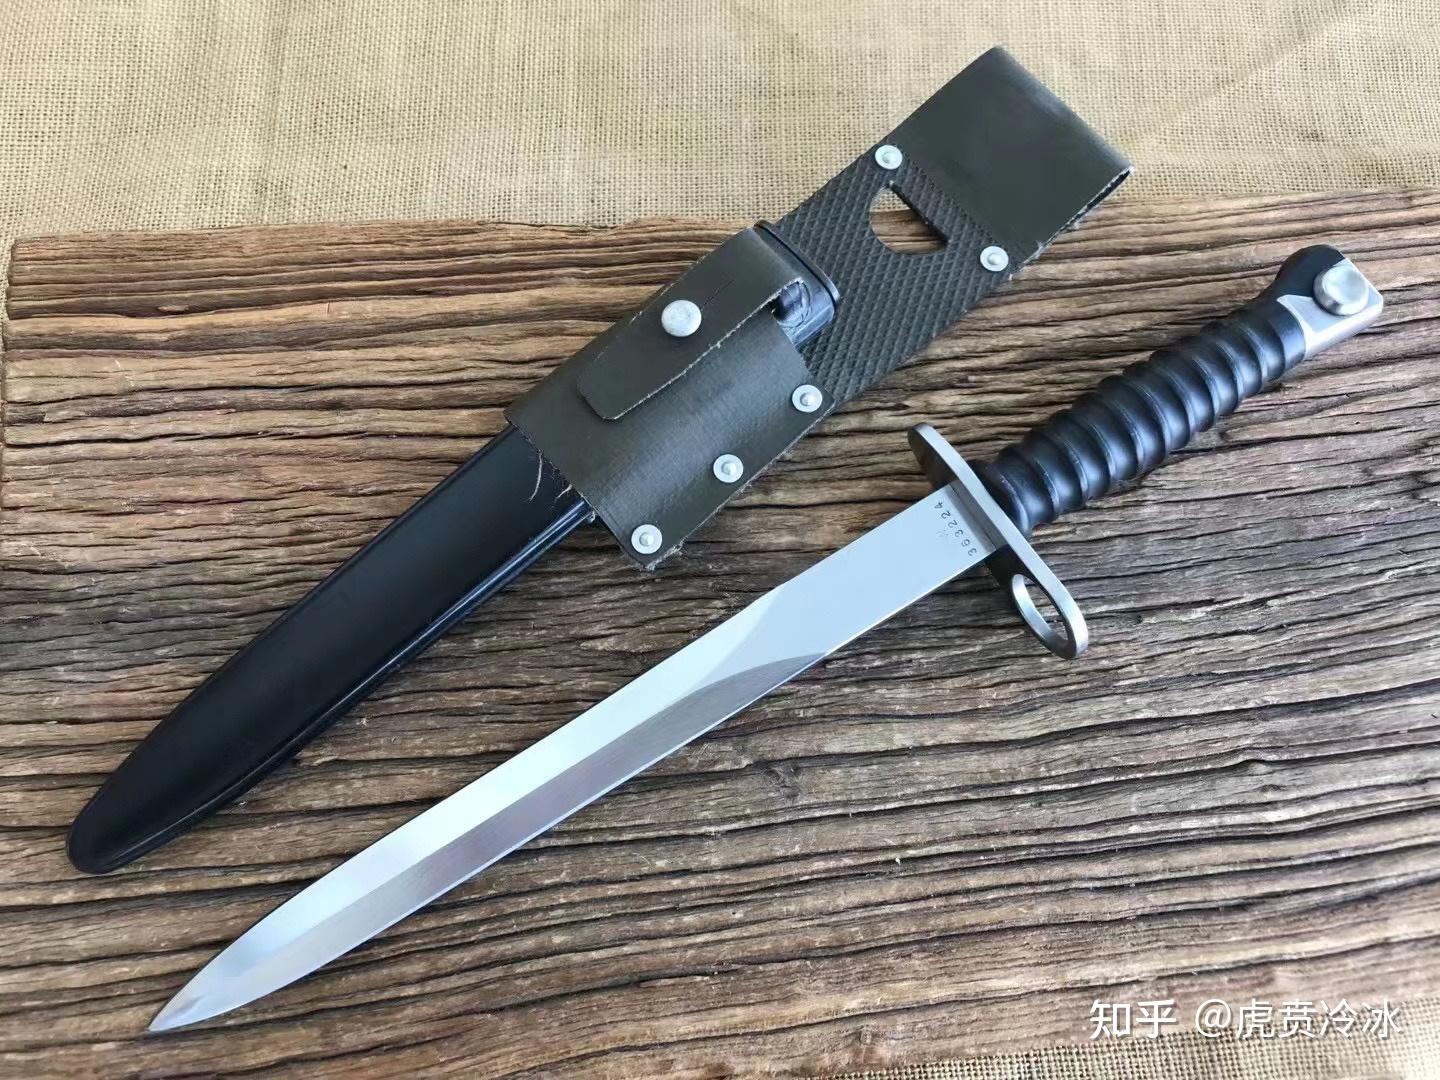 瑞士k57,是一款赫赫有名的刺刀,这款军用刺刀是刺刀中的佼佼者,该刀由